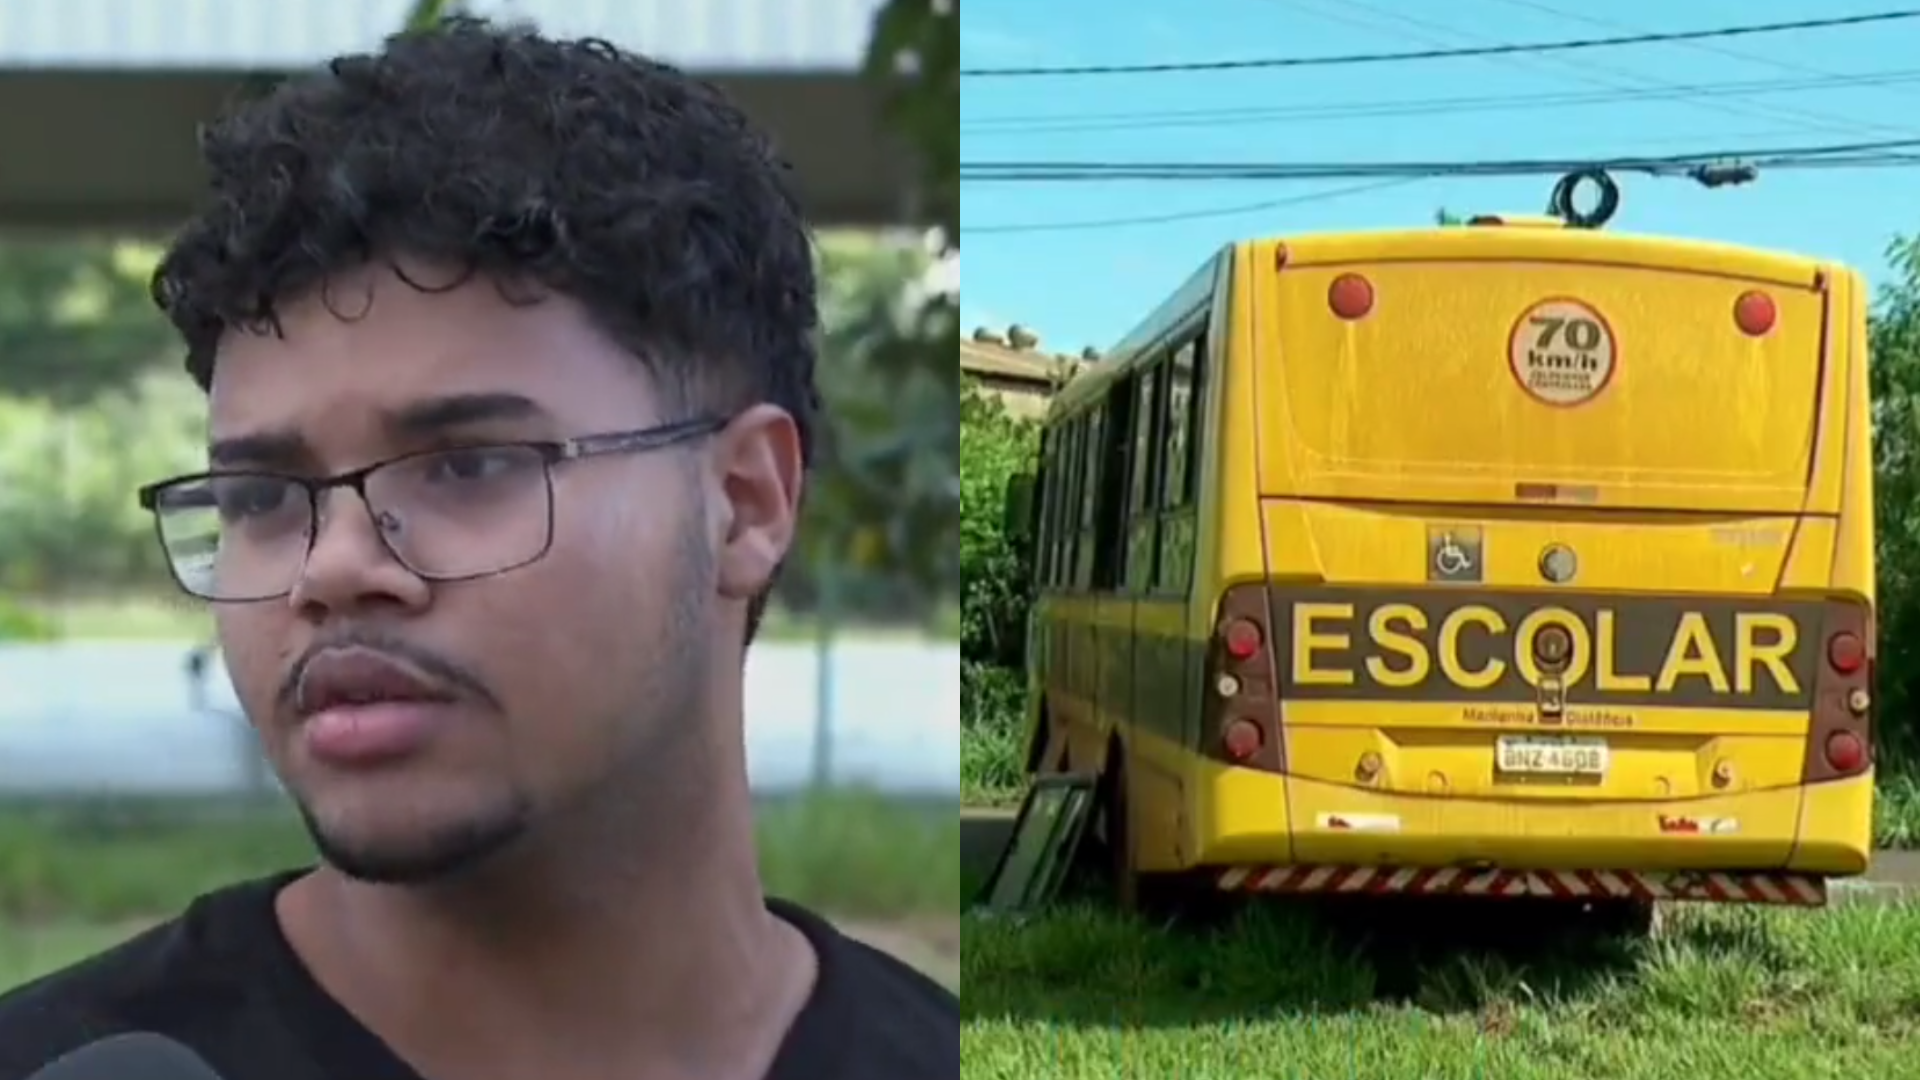 Aluno de 17 anos assume direção de ônibus escolar lotado em SP após motorista ter mal súbito e morrer